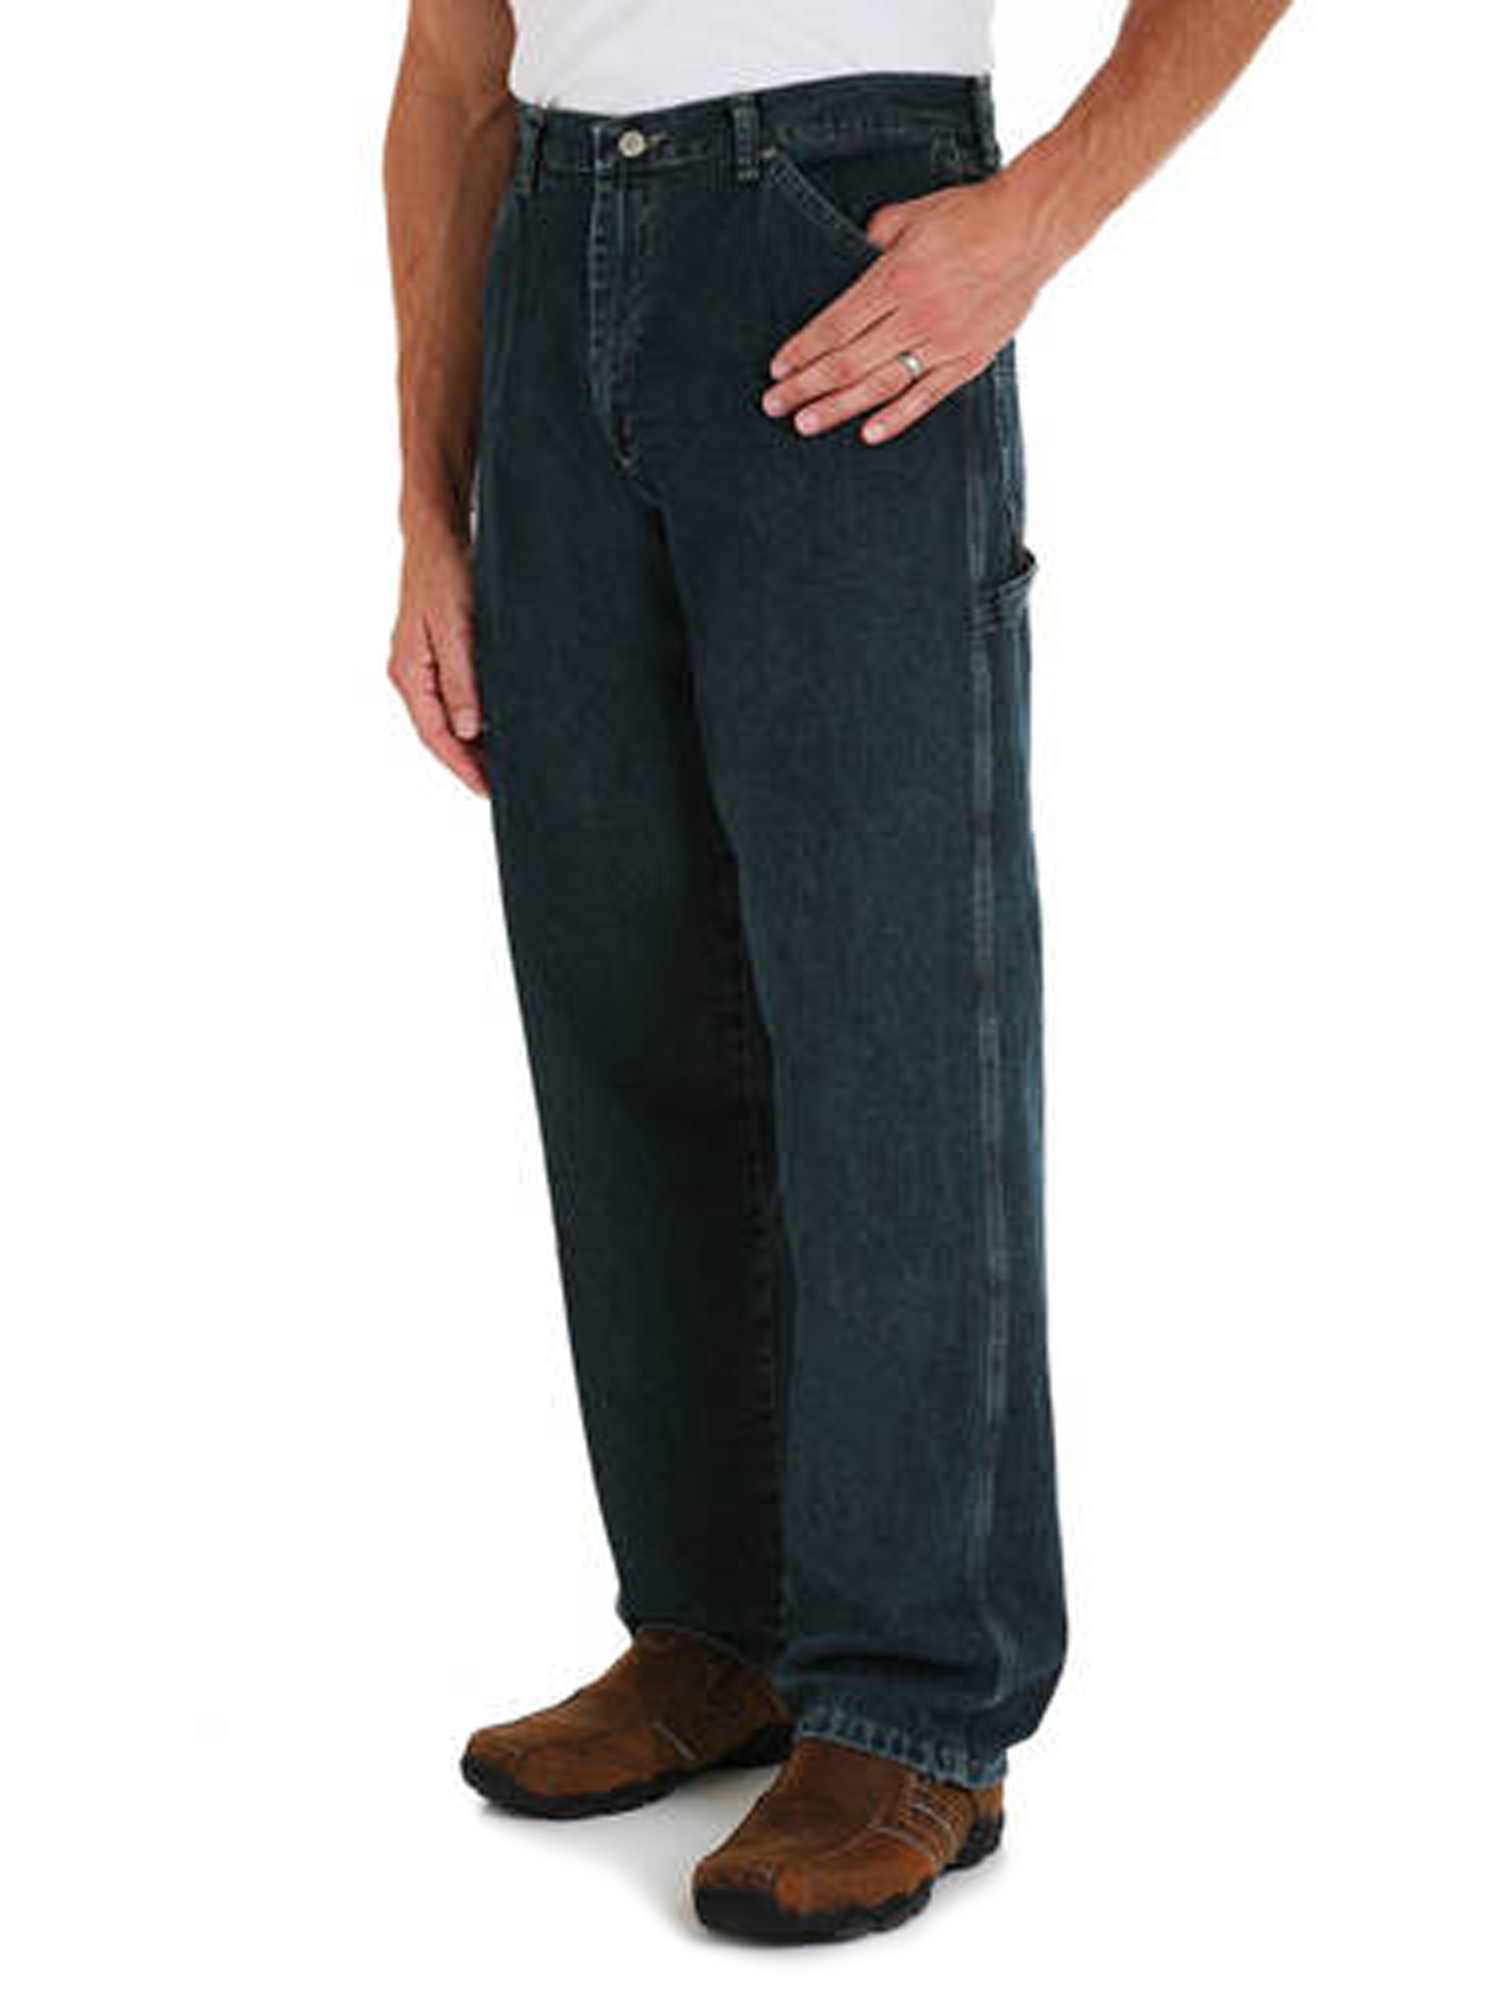 Wrangler Men's and Big Men's Carpenter Pant - image 1 of 3